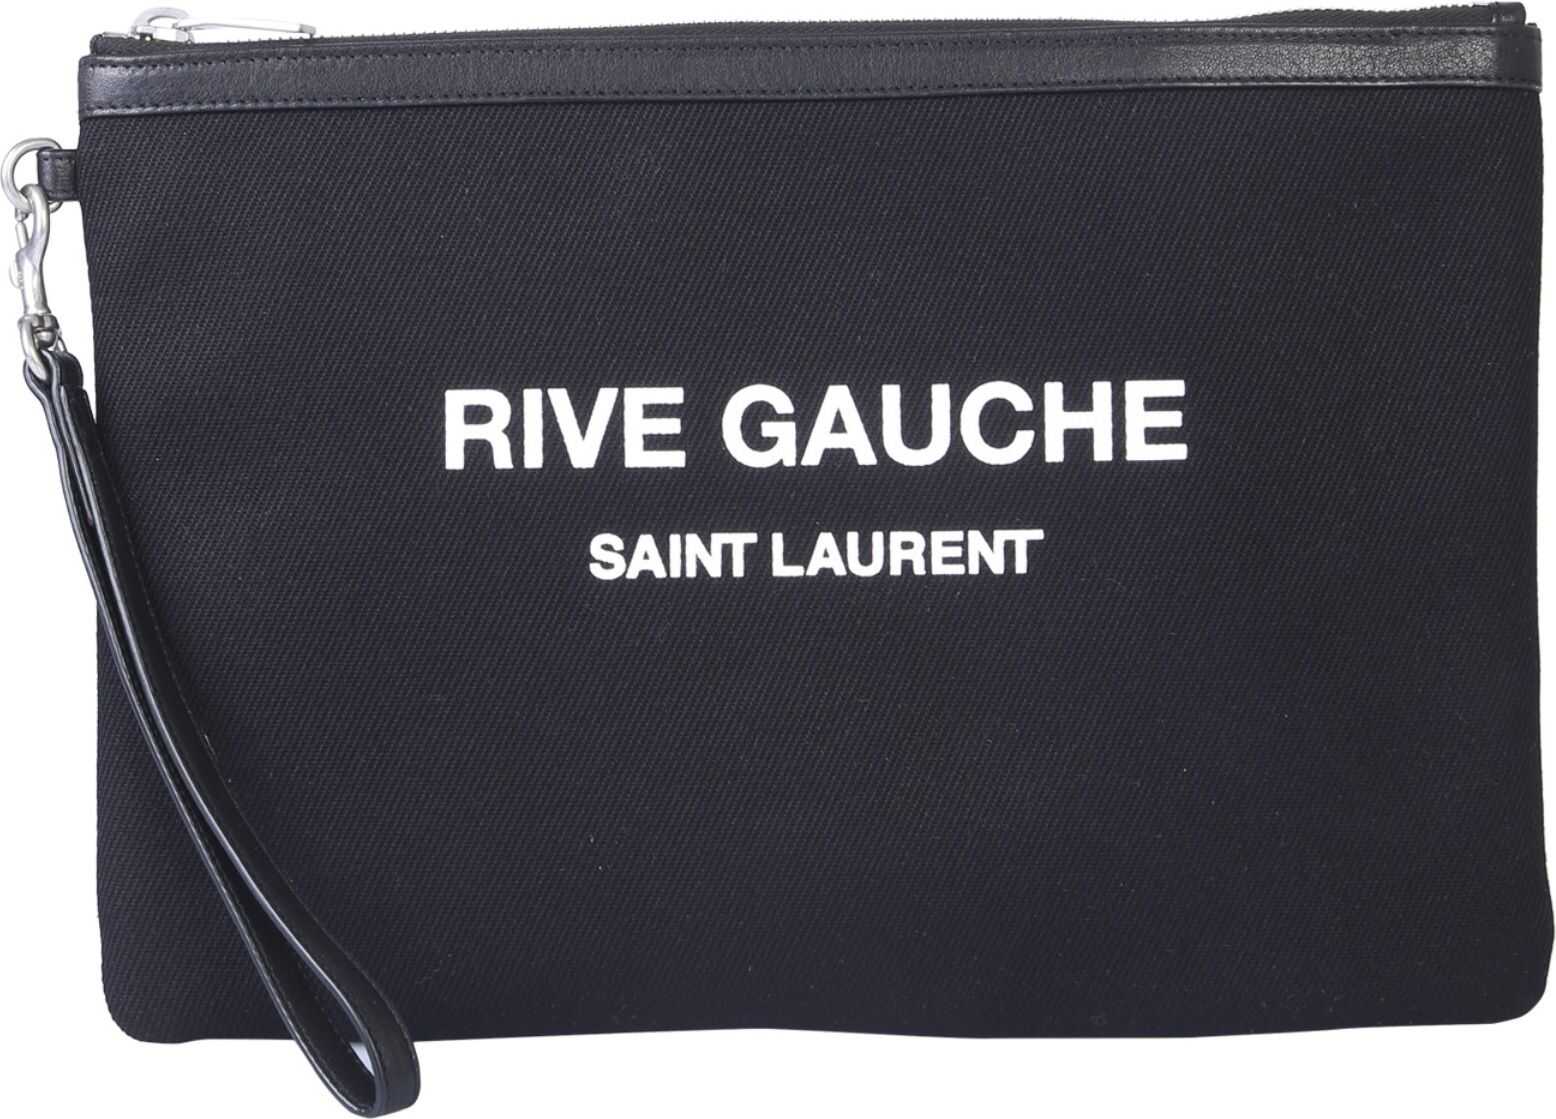 Saint Laurent Rive Gauche Pouch BLACK